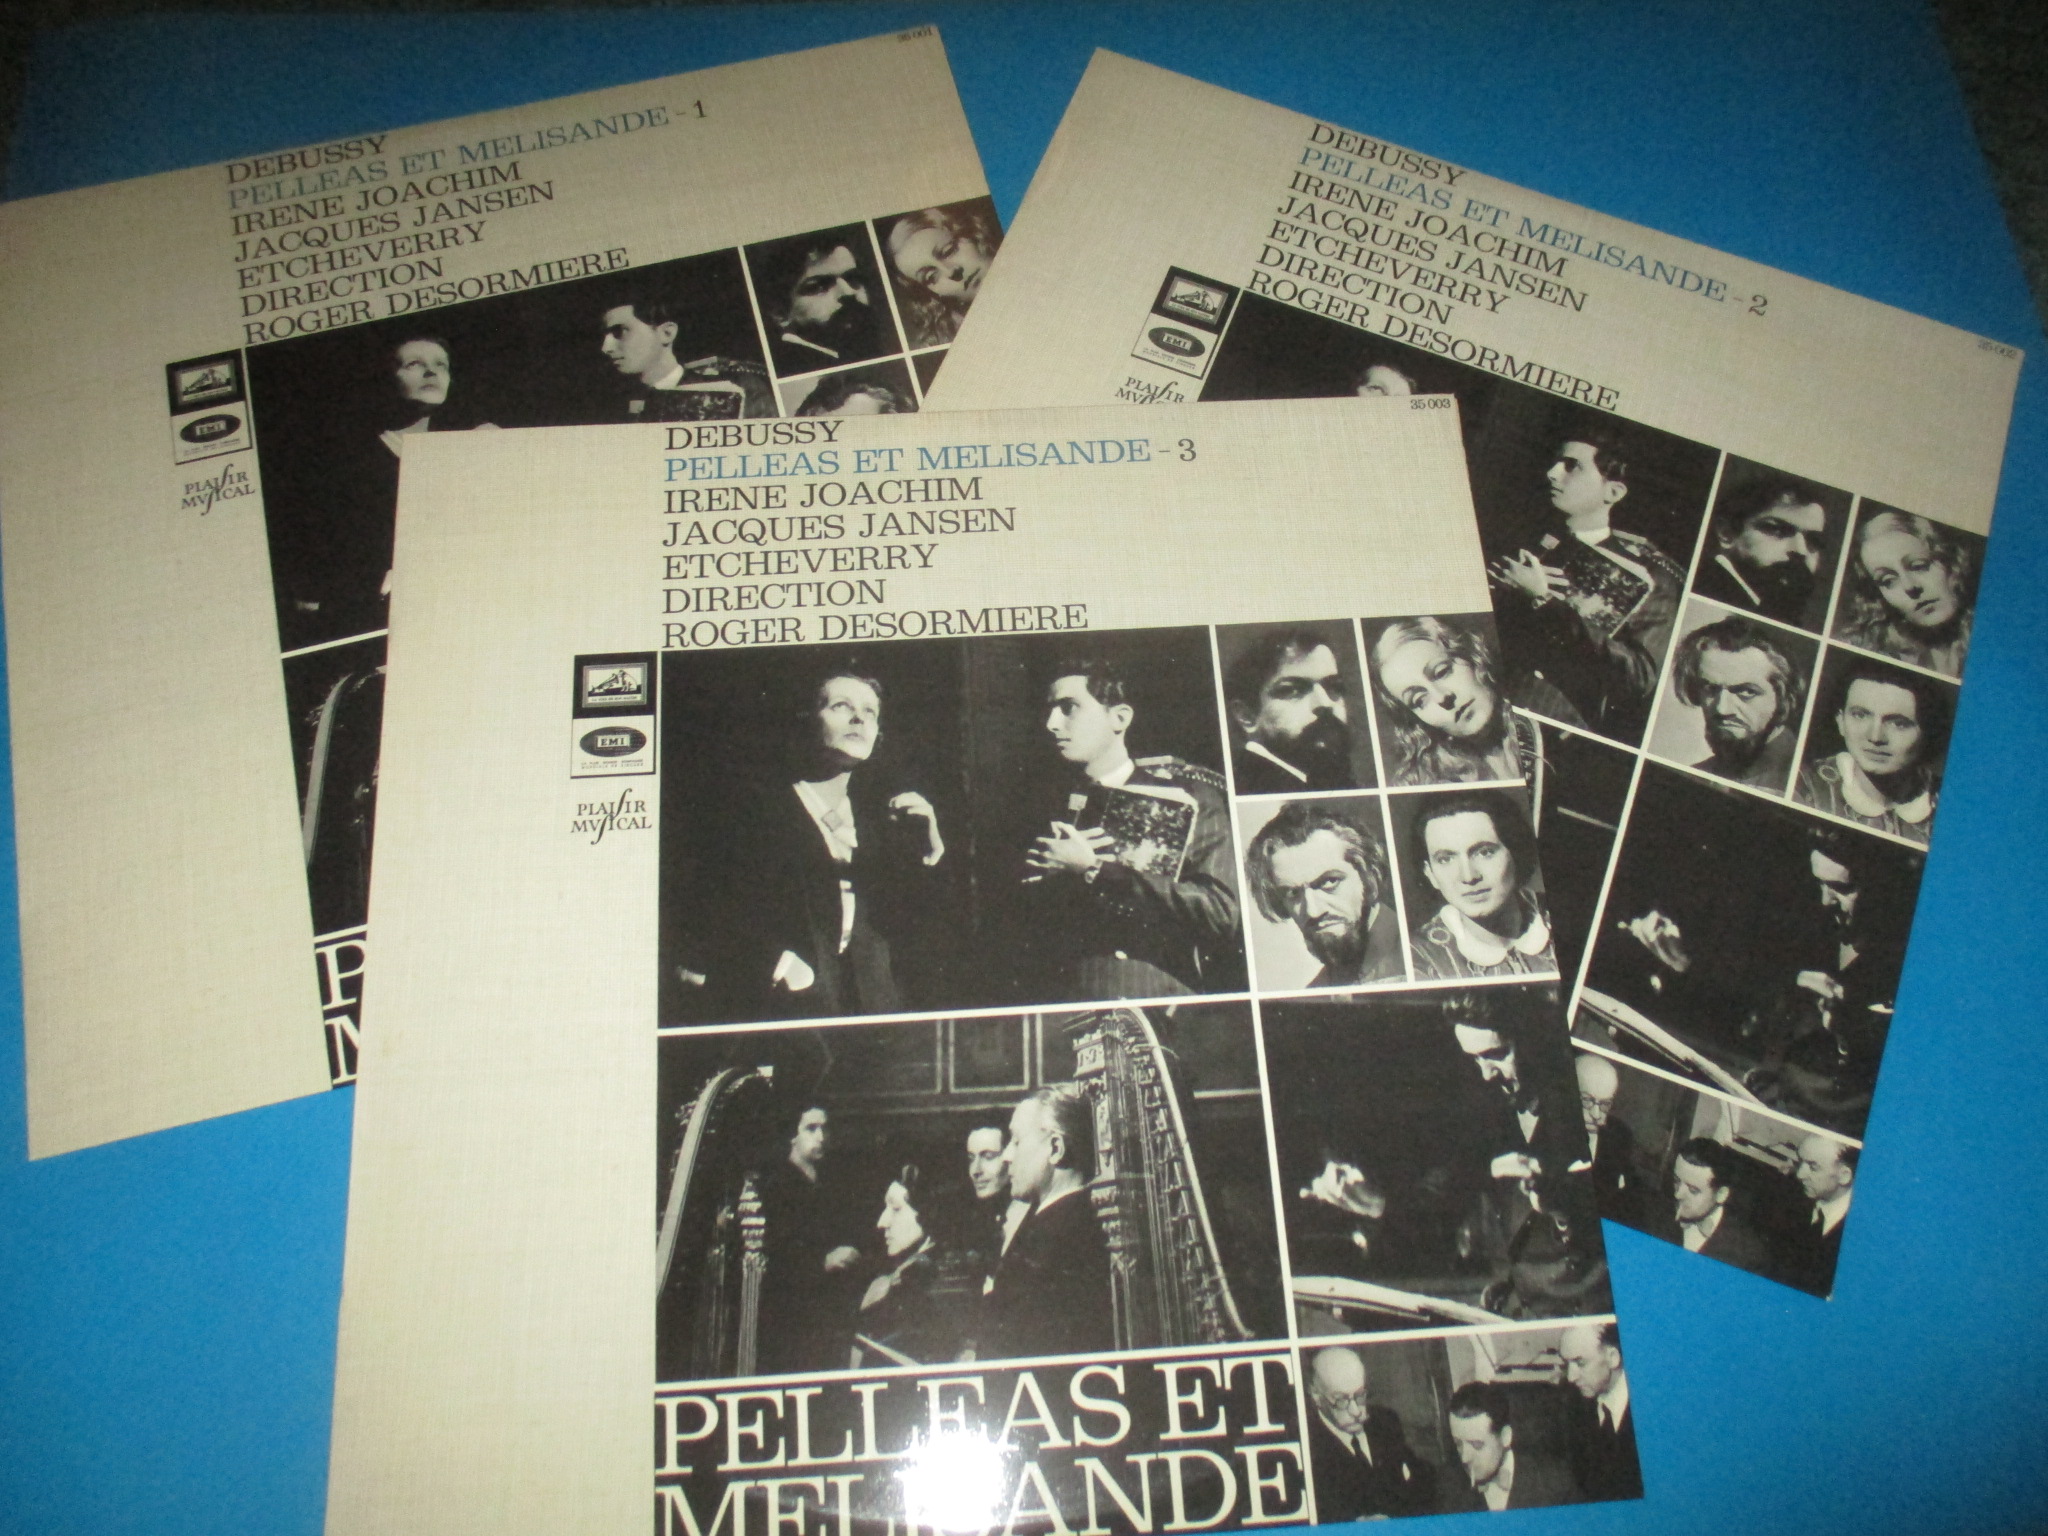 3 disques Pelléas et Mélisande, Debussy, Irène Joachim Jacques Jansen Etcheverry Roger Desormière, Opéra, 3 x 33 tours EMI Plaisir Musical La voix de son maître